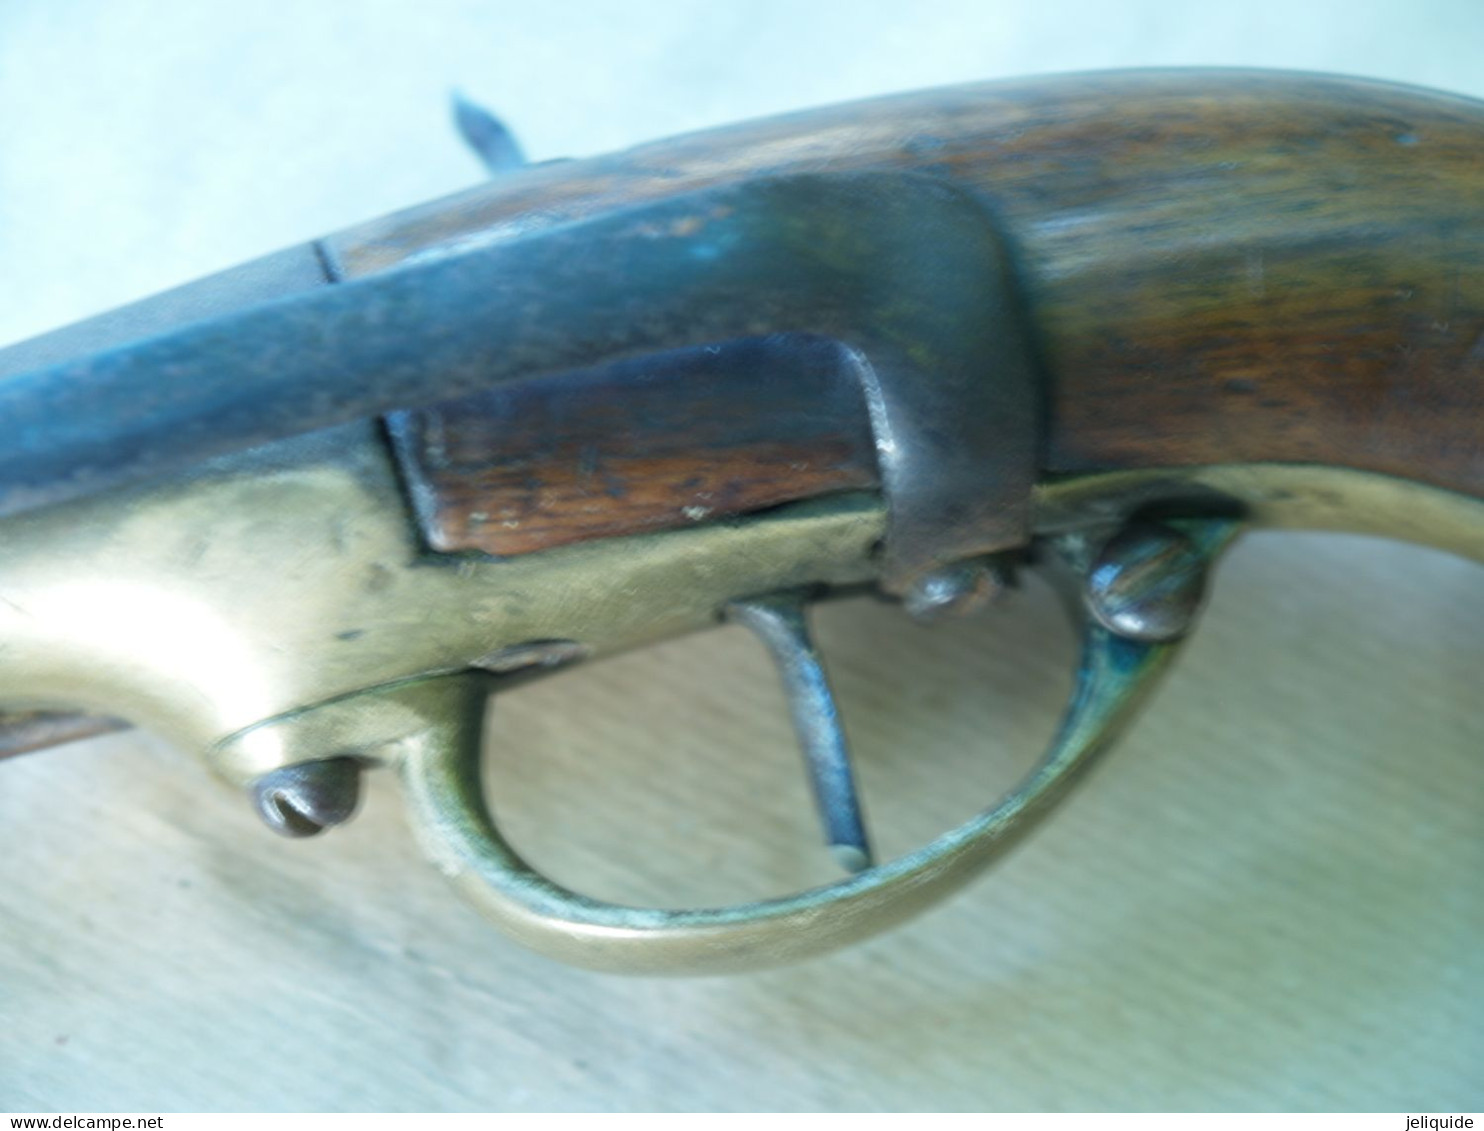 ancien pistole silex modéle 1777 1ere serie St Etienne avec crochet de ceinture  modifier percusion 1782